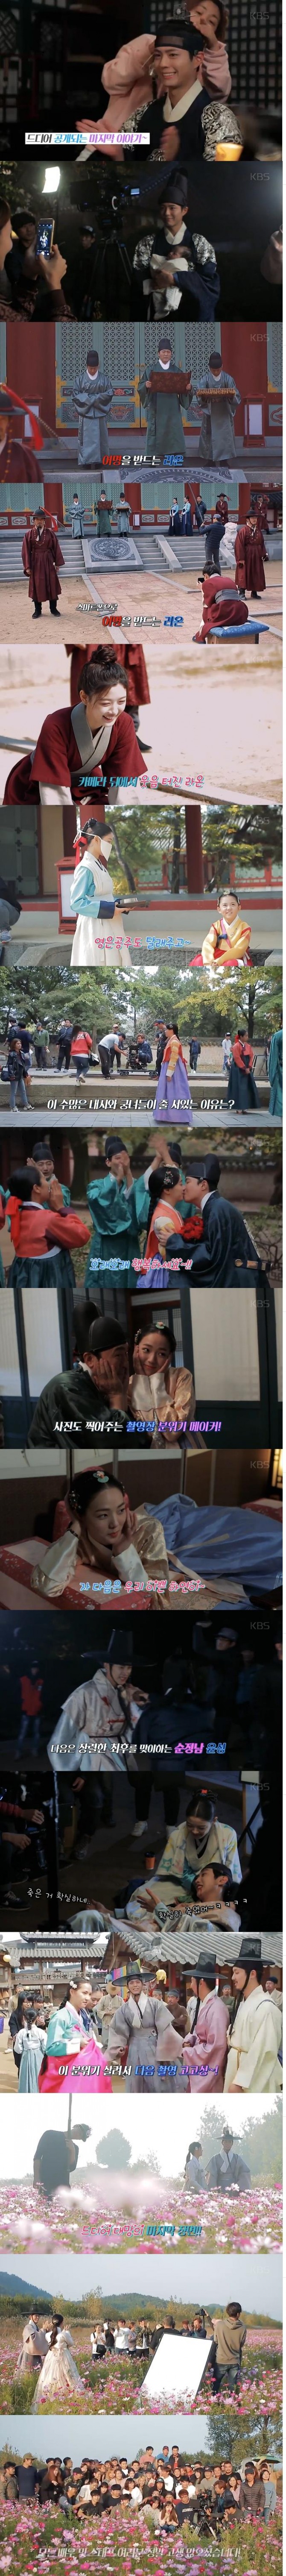 지난 18일 인기리에 종영한 '구르미 그린 달빛' 마지막 메이킹 영상이 21일 공개됐다./사진=KBS2 영상 캡처